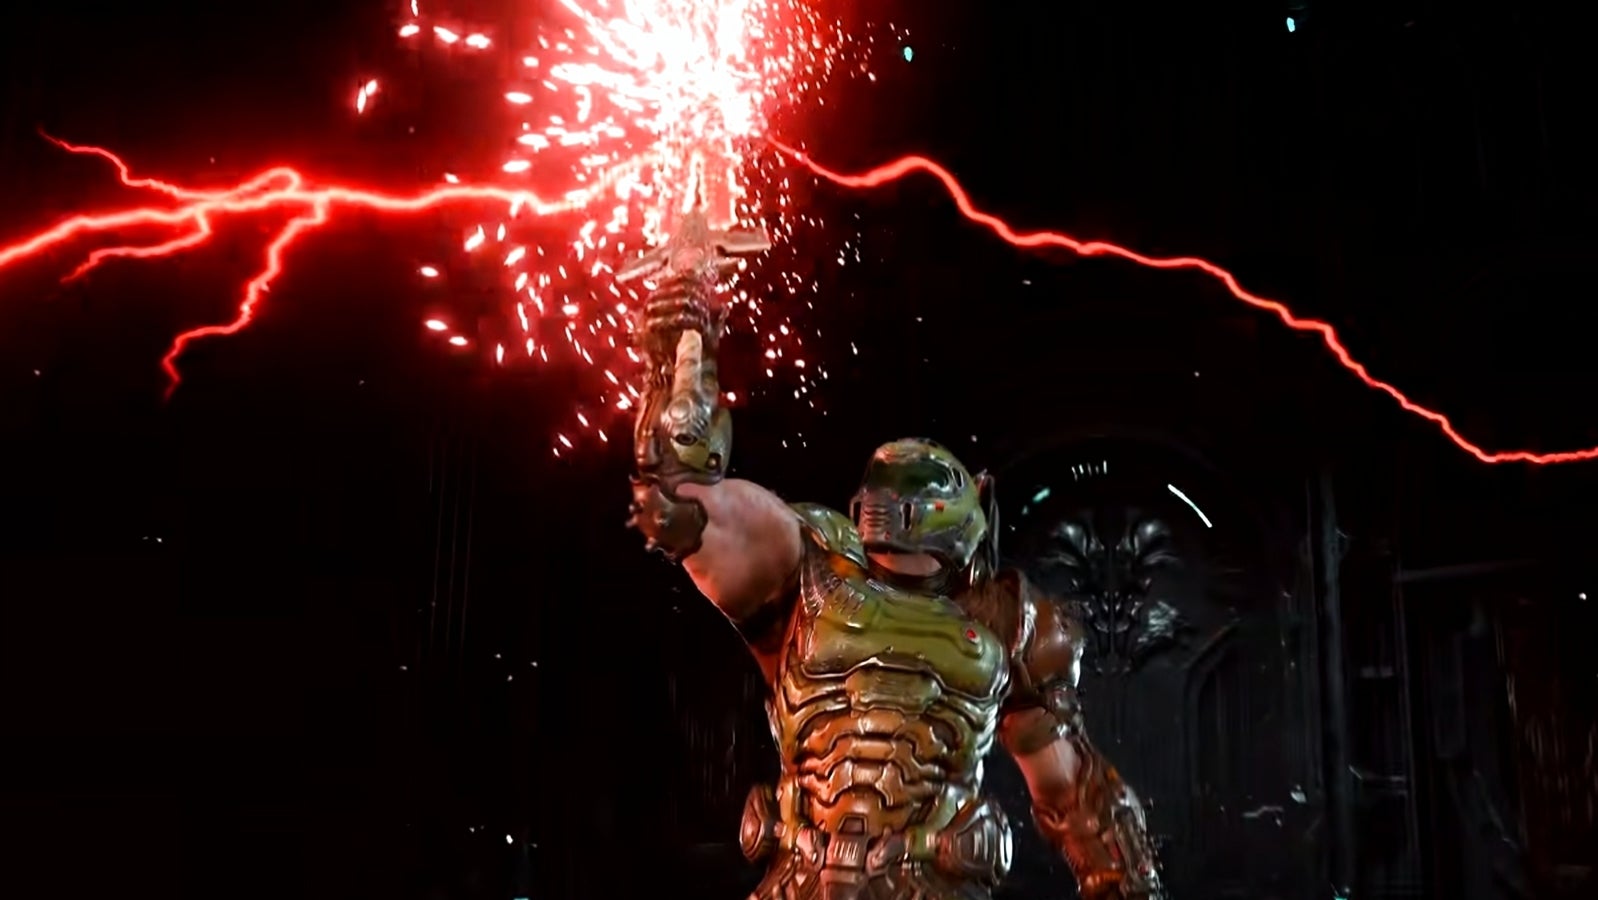 Bilder zu Doom Eternals Next-Gen-Upgrade macht einen exzellenten Shooter noch besser